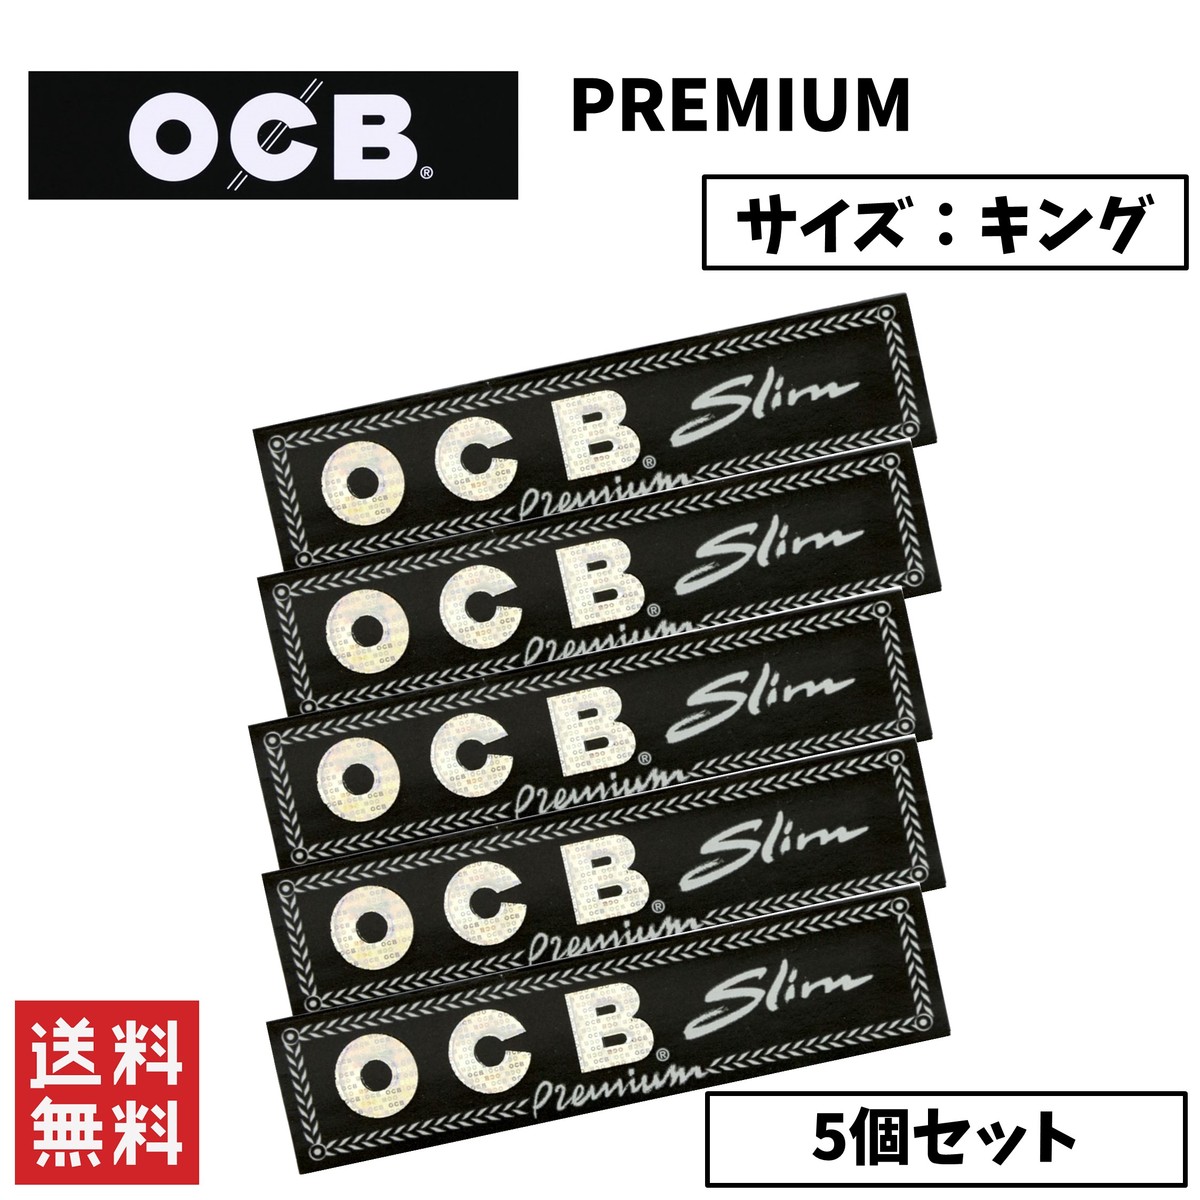 世界的に有名な手巻きタバコブランド OCB PREMIUM プレミアム キングサイズ 手巻きたばこ ペーパー 5個セット ラッピング無料 日本限定 喫煙具